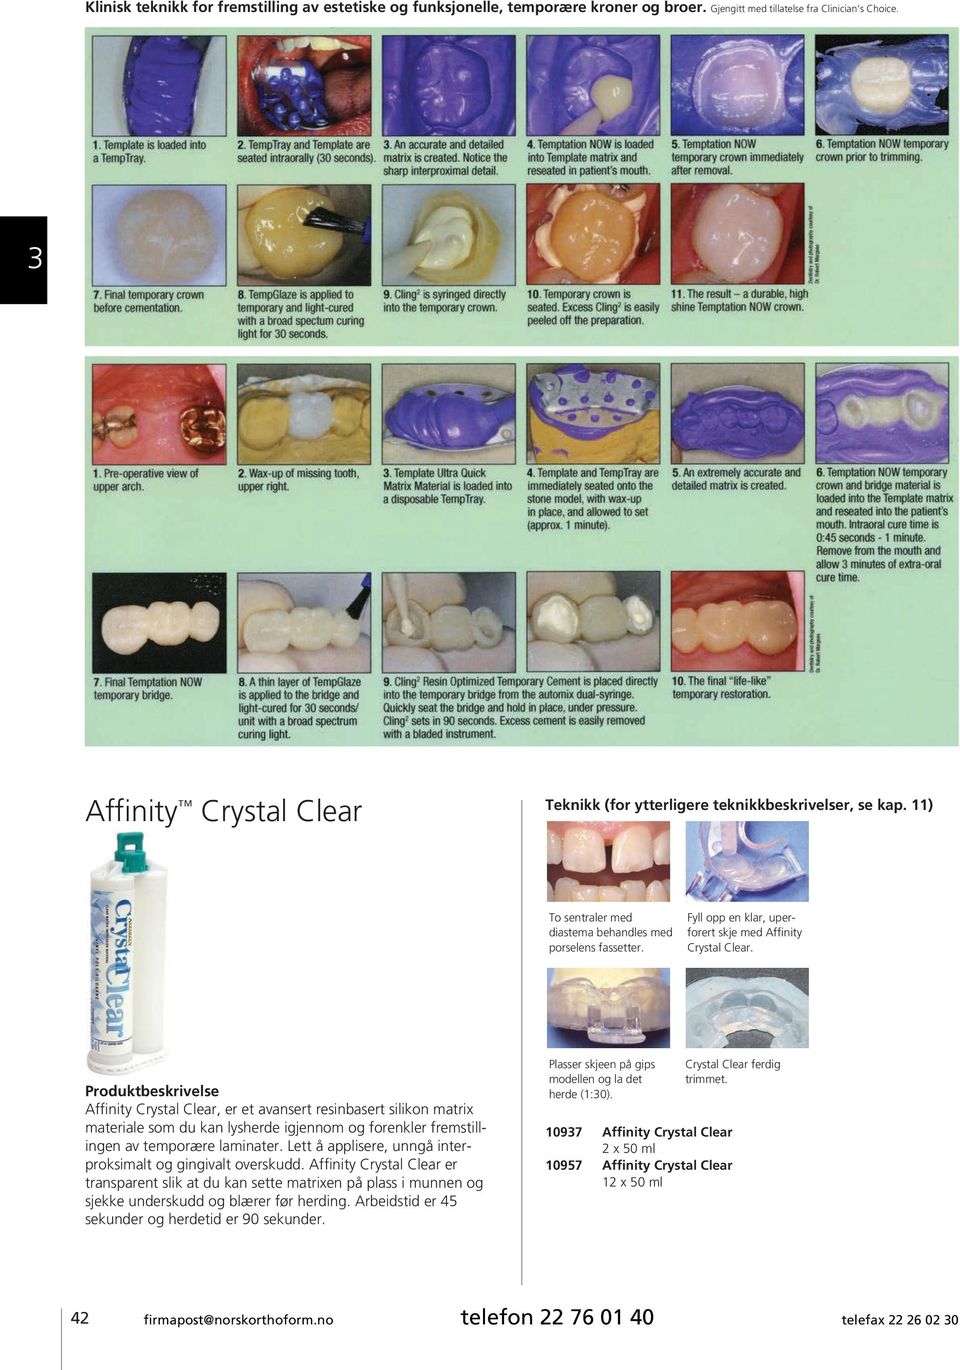 Affinity Crystal Clear, er et avansert resinbasert silikon matrix materiale som du kan lysherde igjennom og forenkler fremstillingen av temporære laminater.